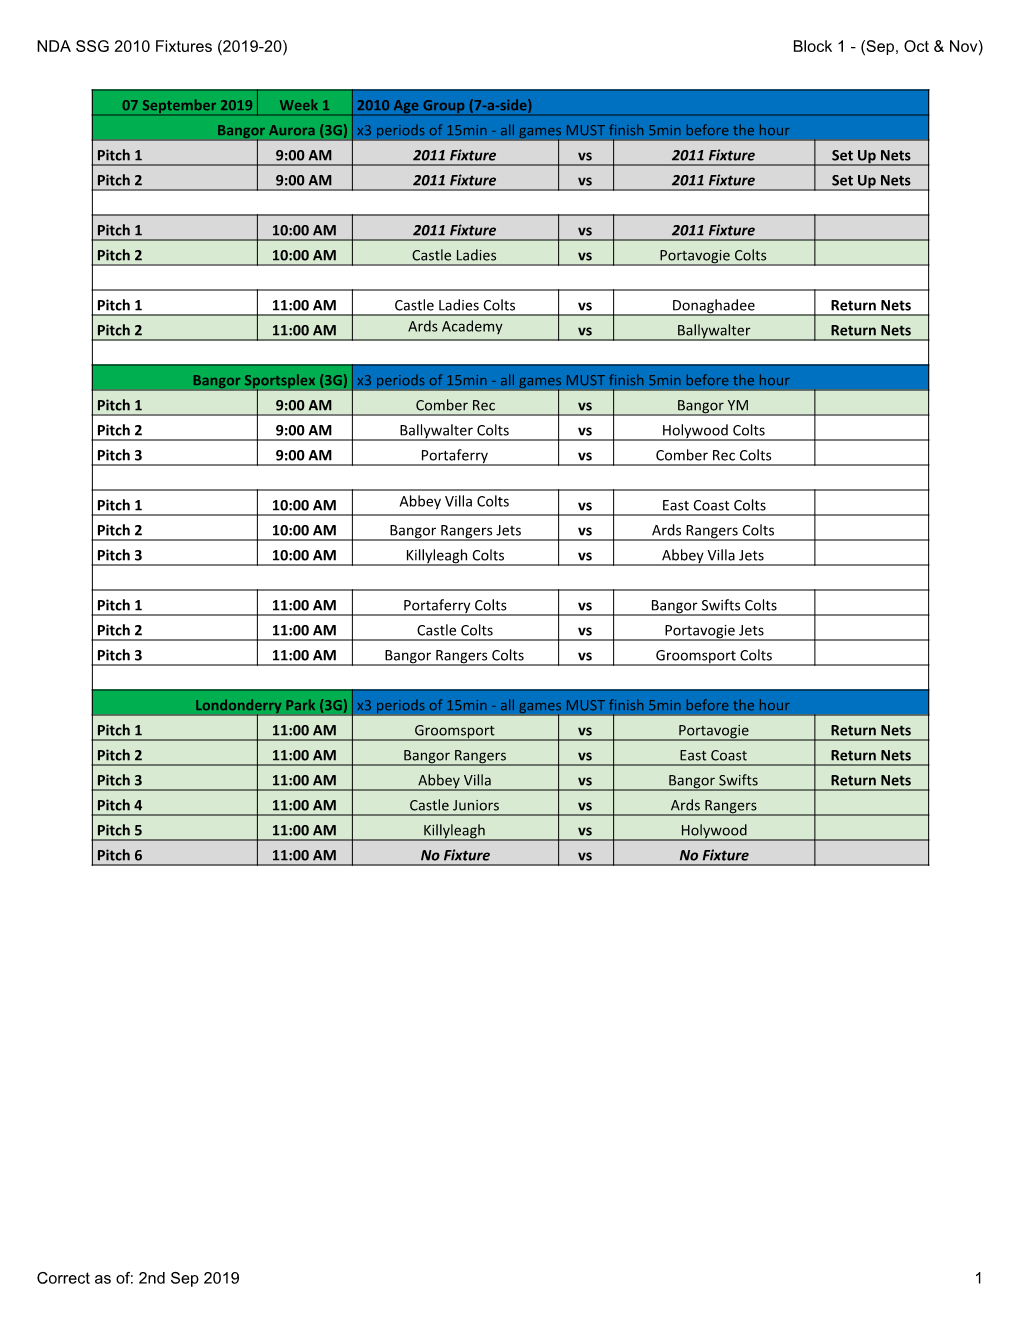 NDA SSG 2010 Fixtures (2019-20) Block 1 - (Sep, Oct & Nov)